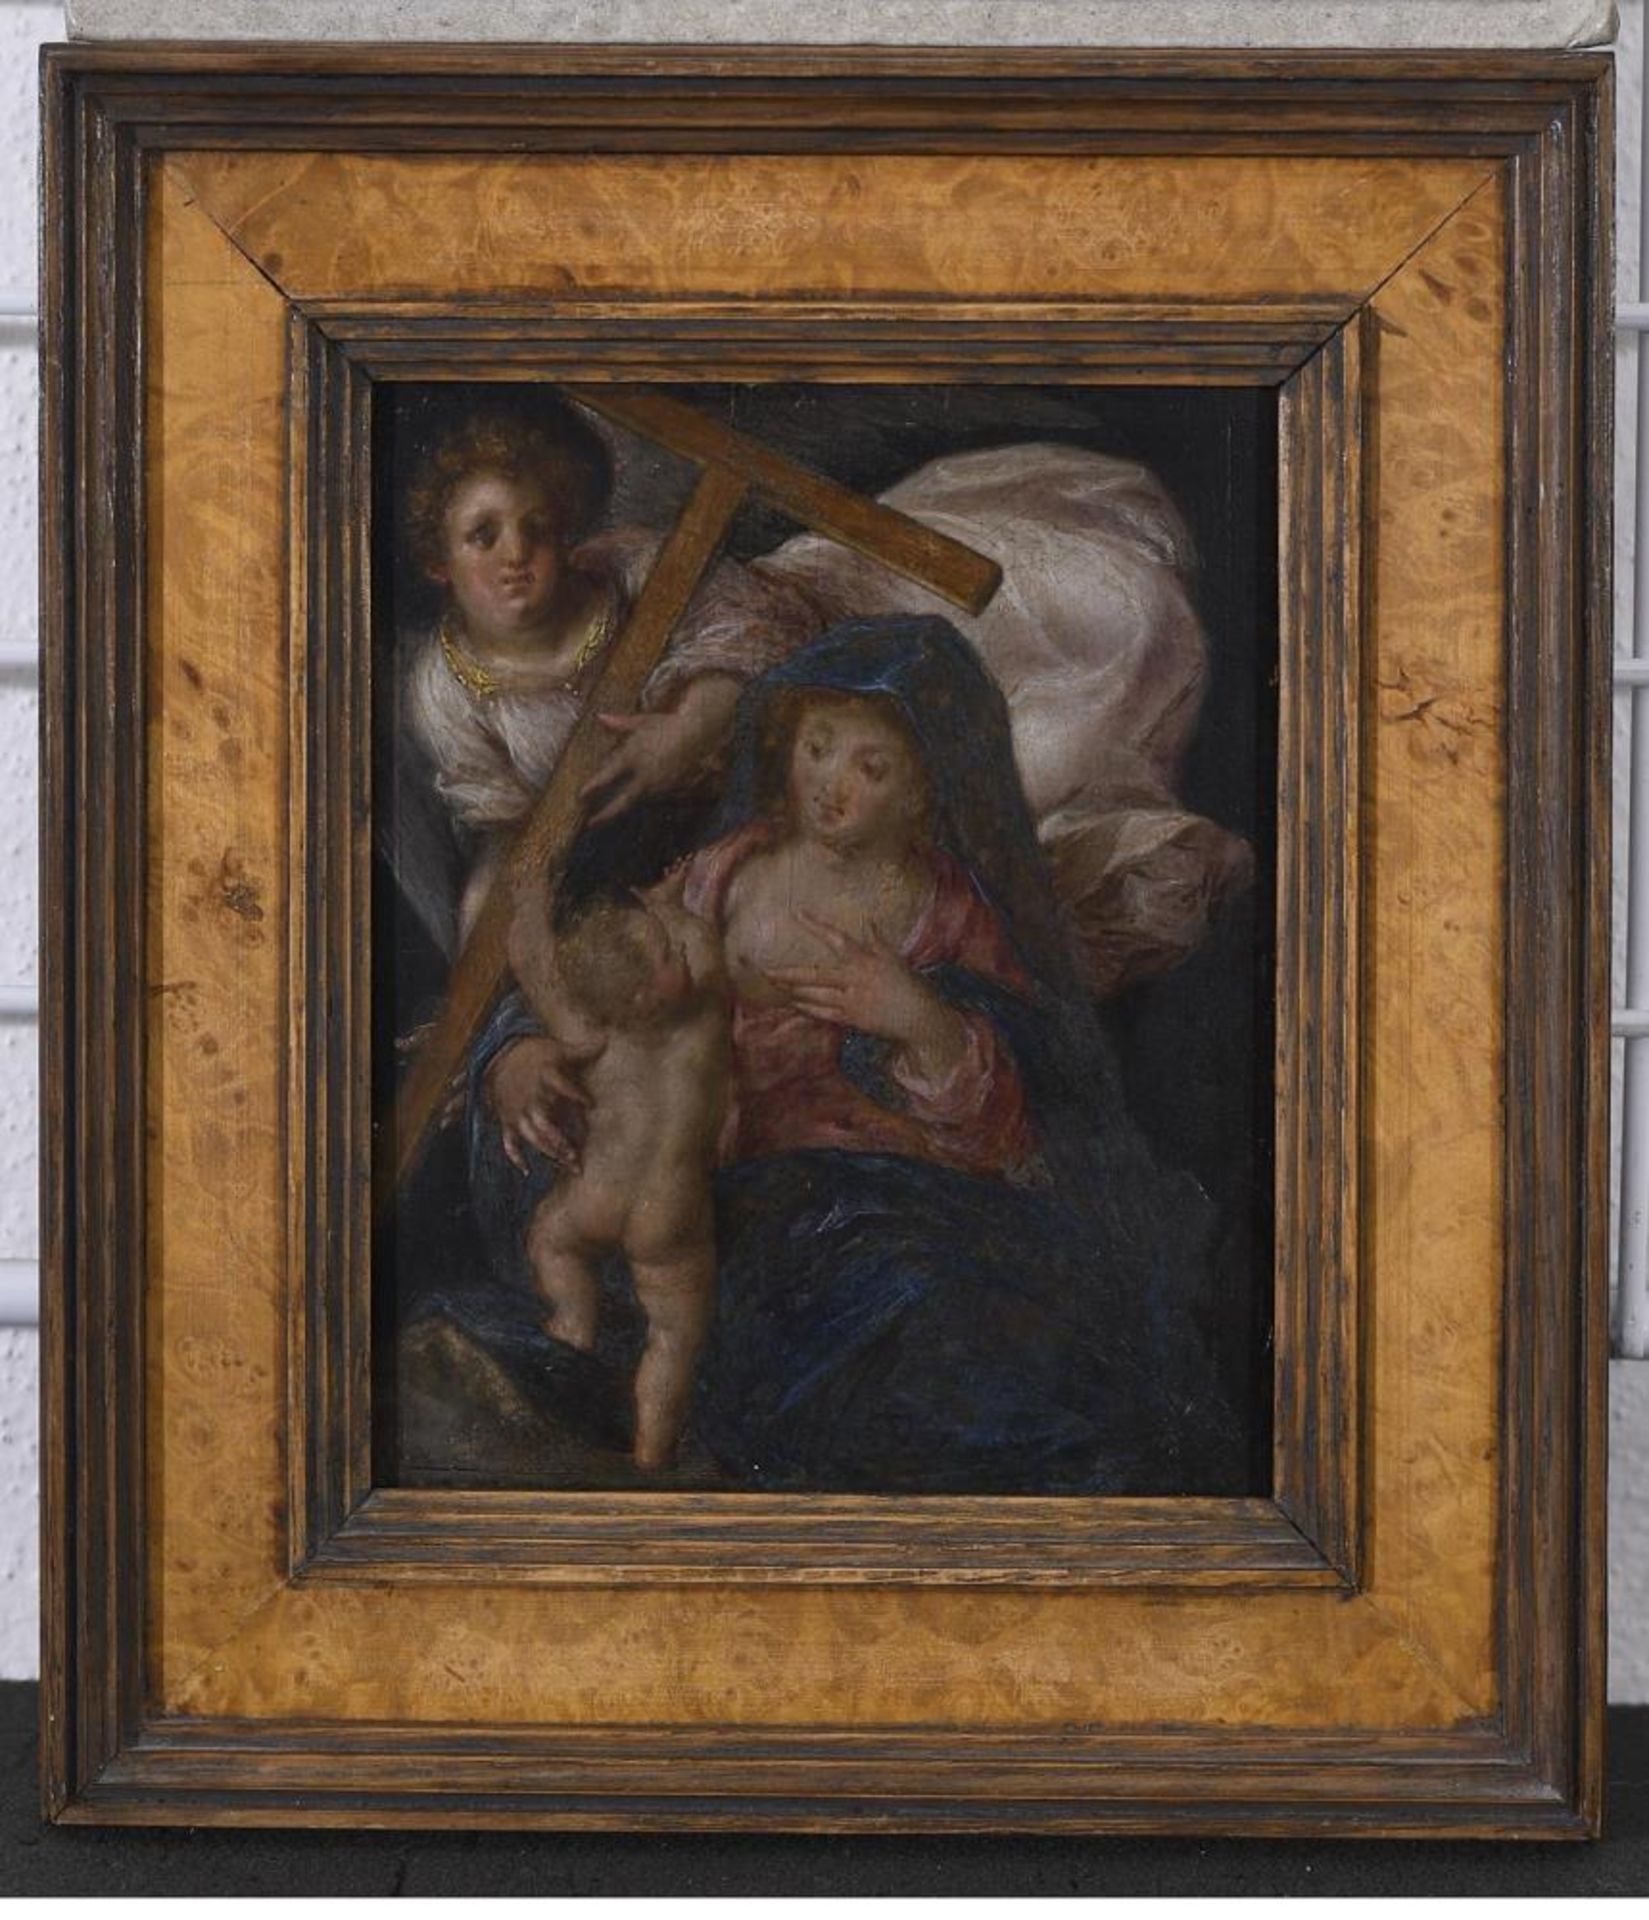 WOHL SÜDDEUTSCH. Madonna mit Kind. Öl auf Holz. - Image 2 of 3